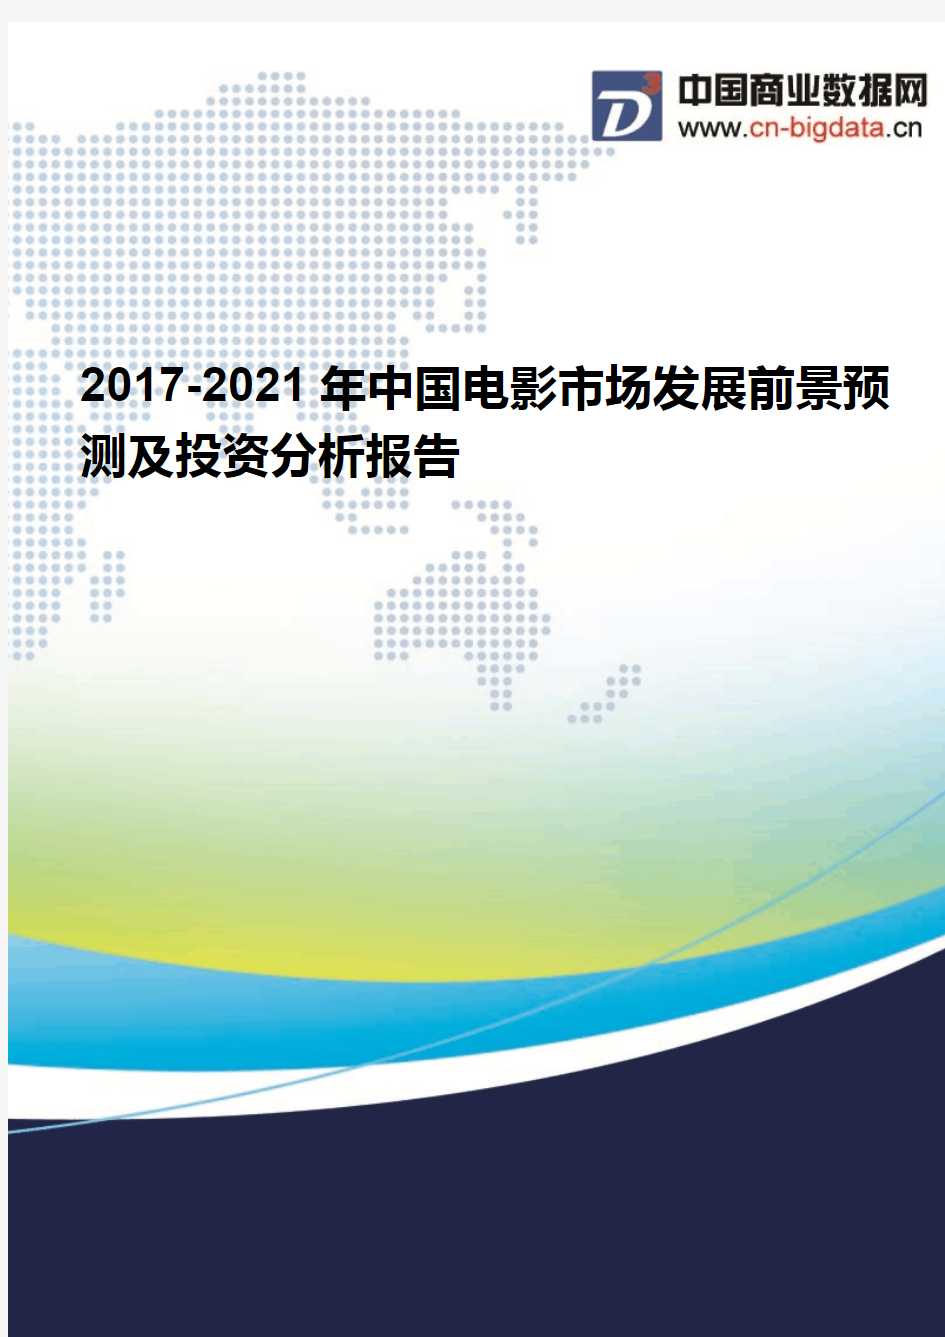 (2017版目录)2017-2021年中国电影市场发展前景预测及投资分析报告